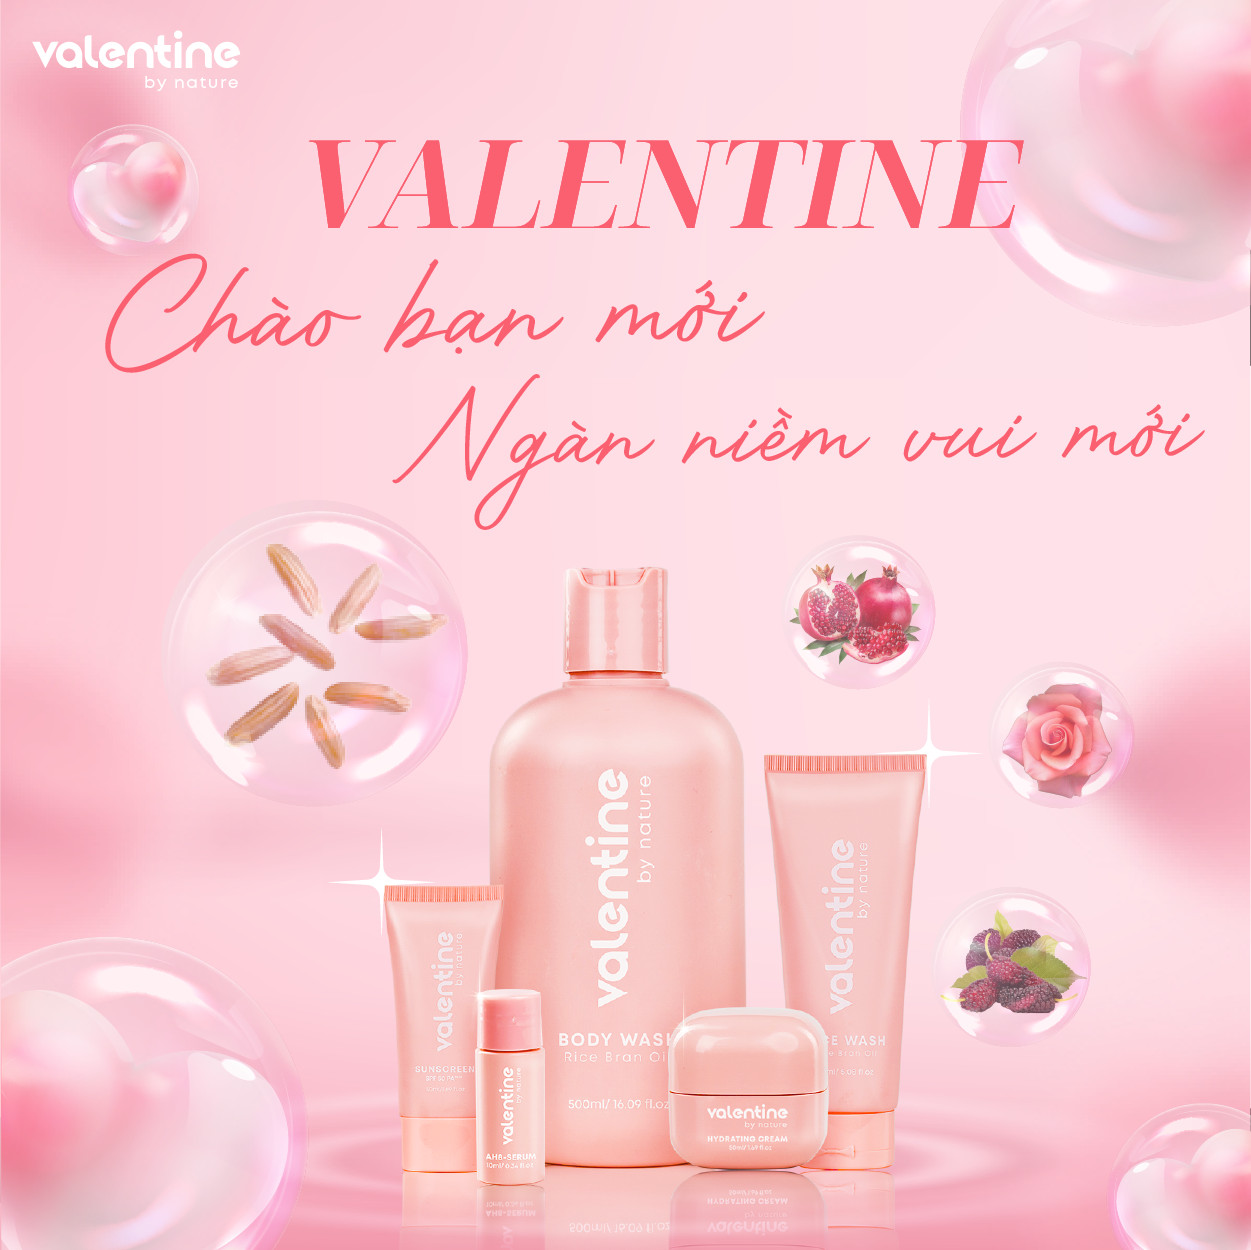 Valentine - một thương hiệu của Sao Thái Dương ra mắt với bộ sản phẩm Organic từ thiên nhiên